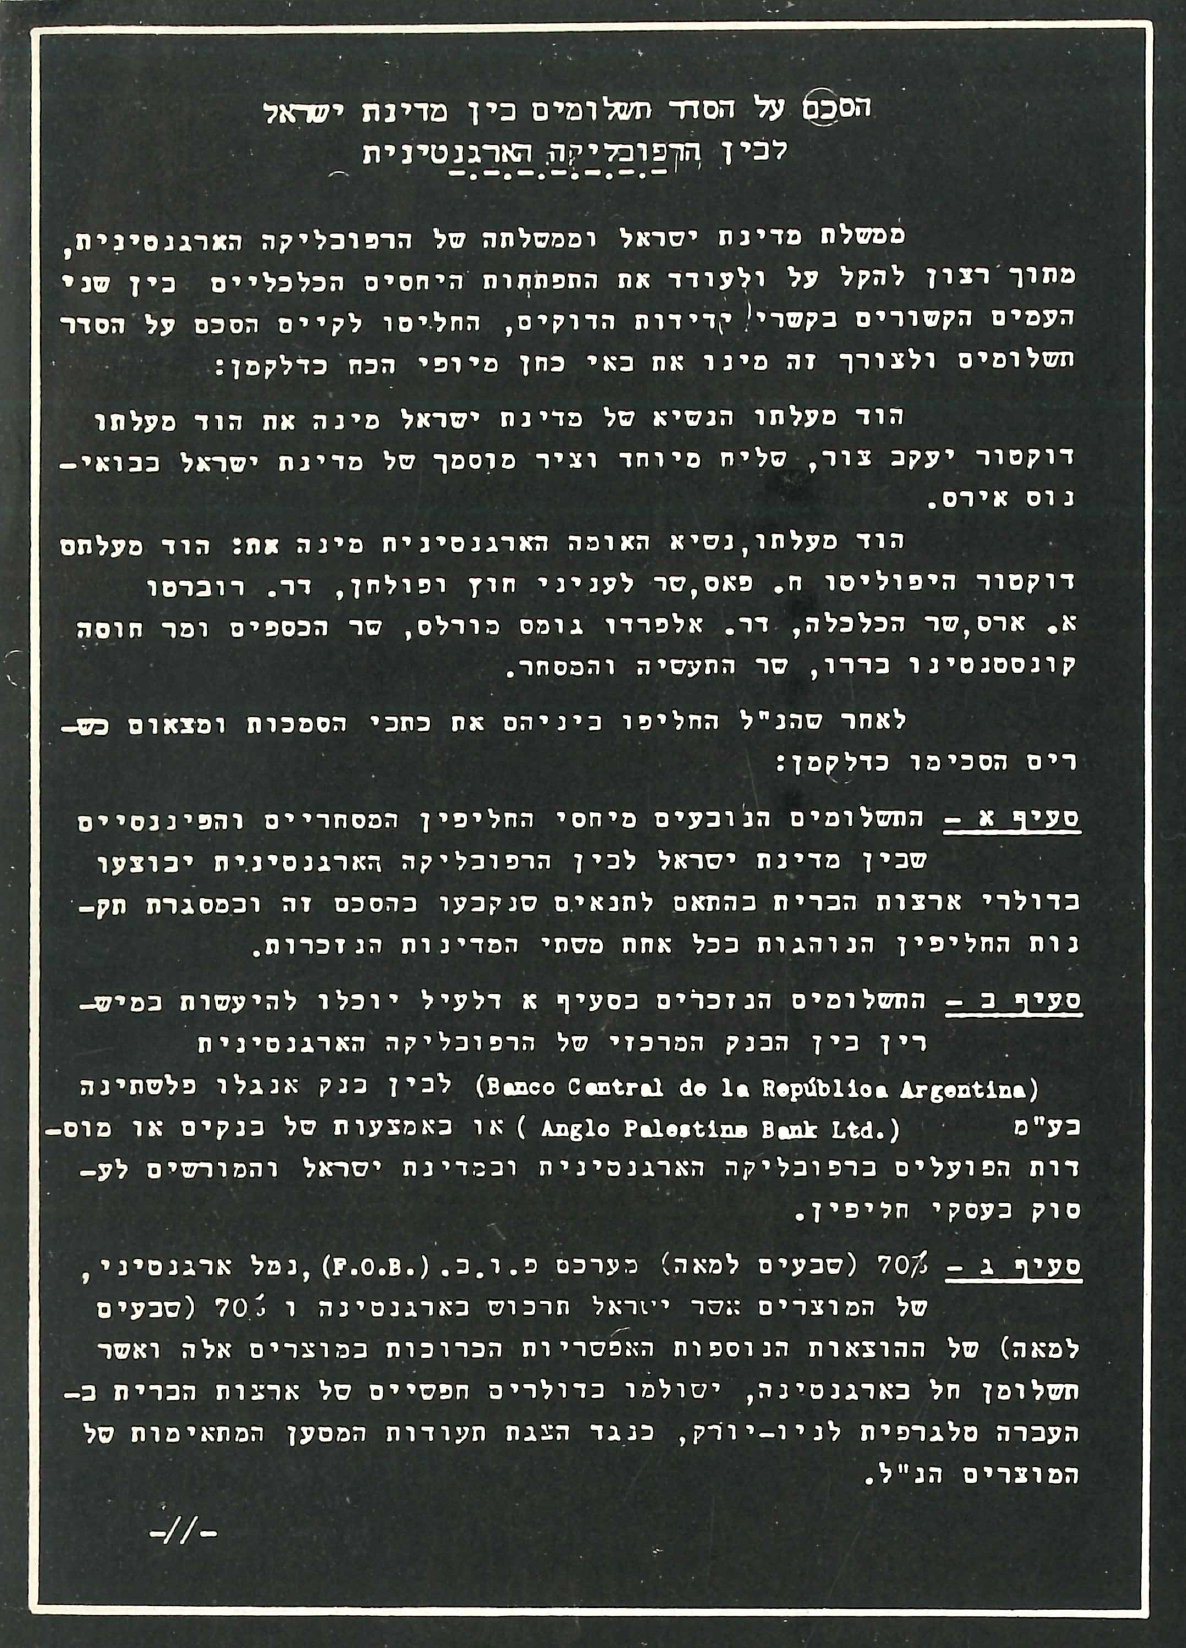 La versión original en hebreo del Convenio sobre Régimen de Pagos suscrito entre Israel y Argentina.